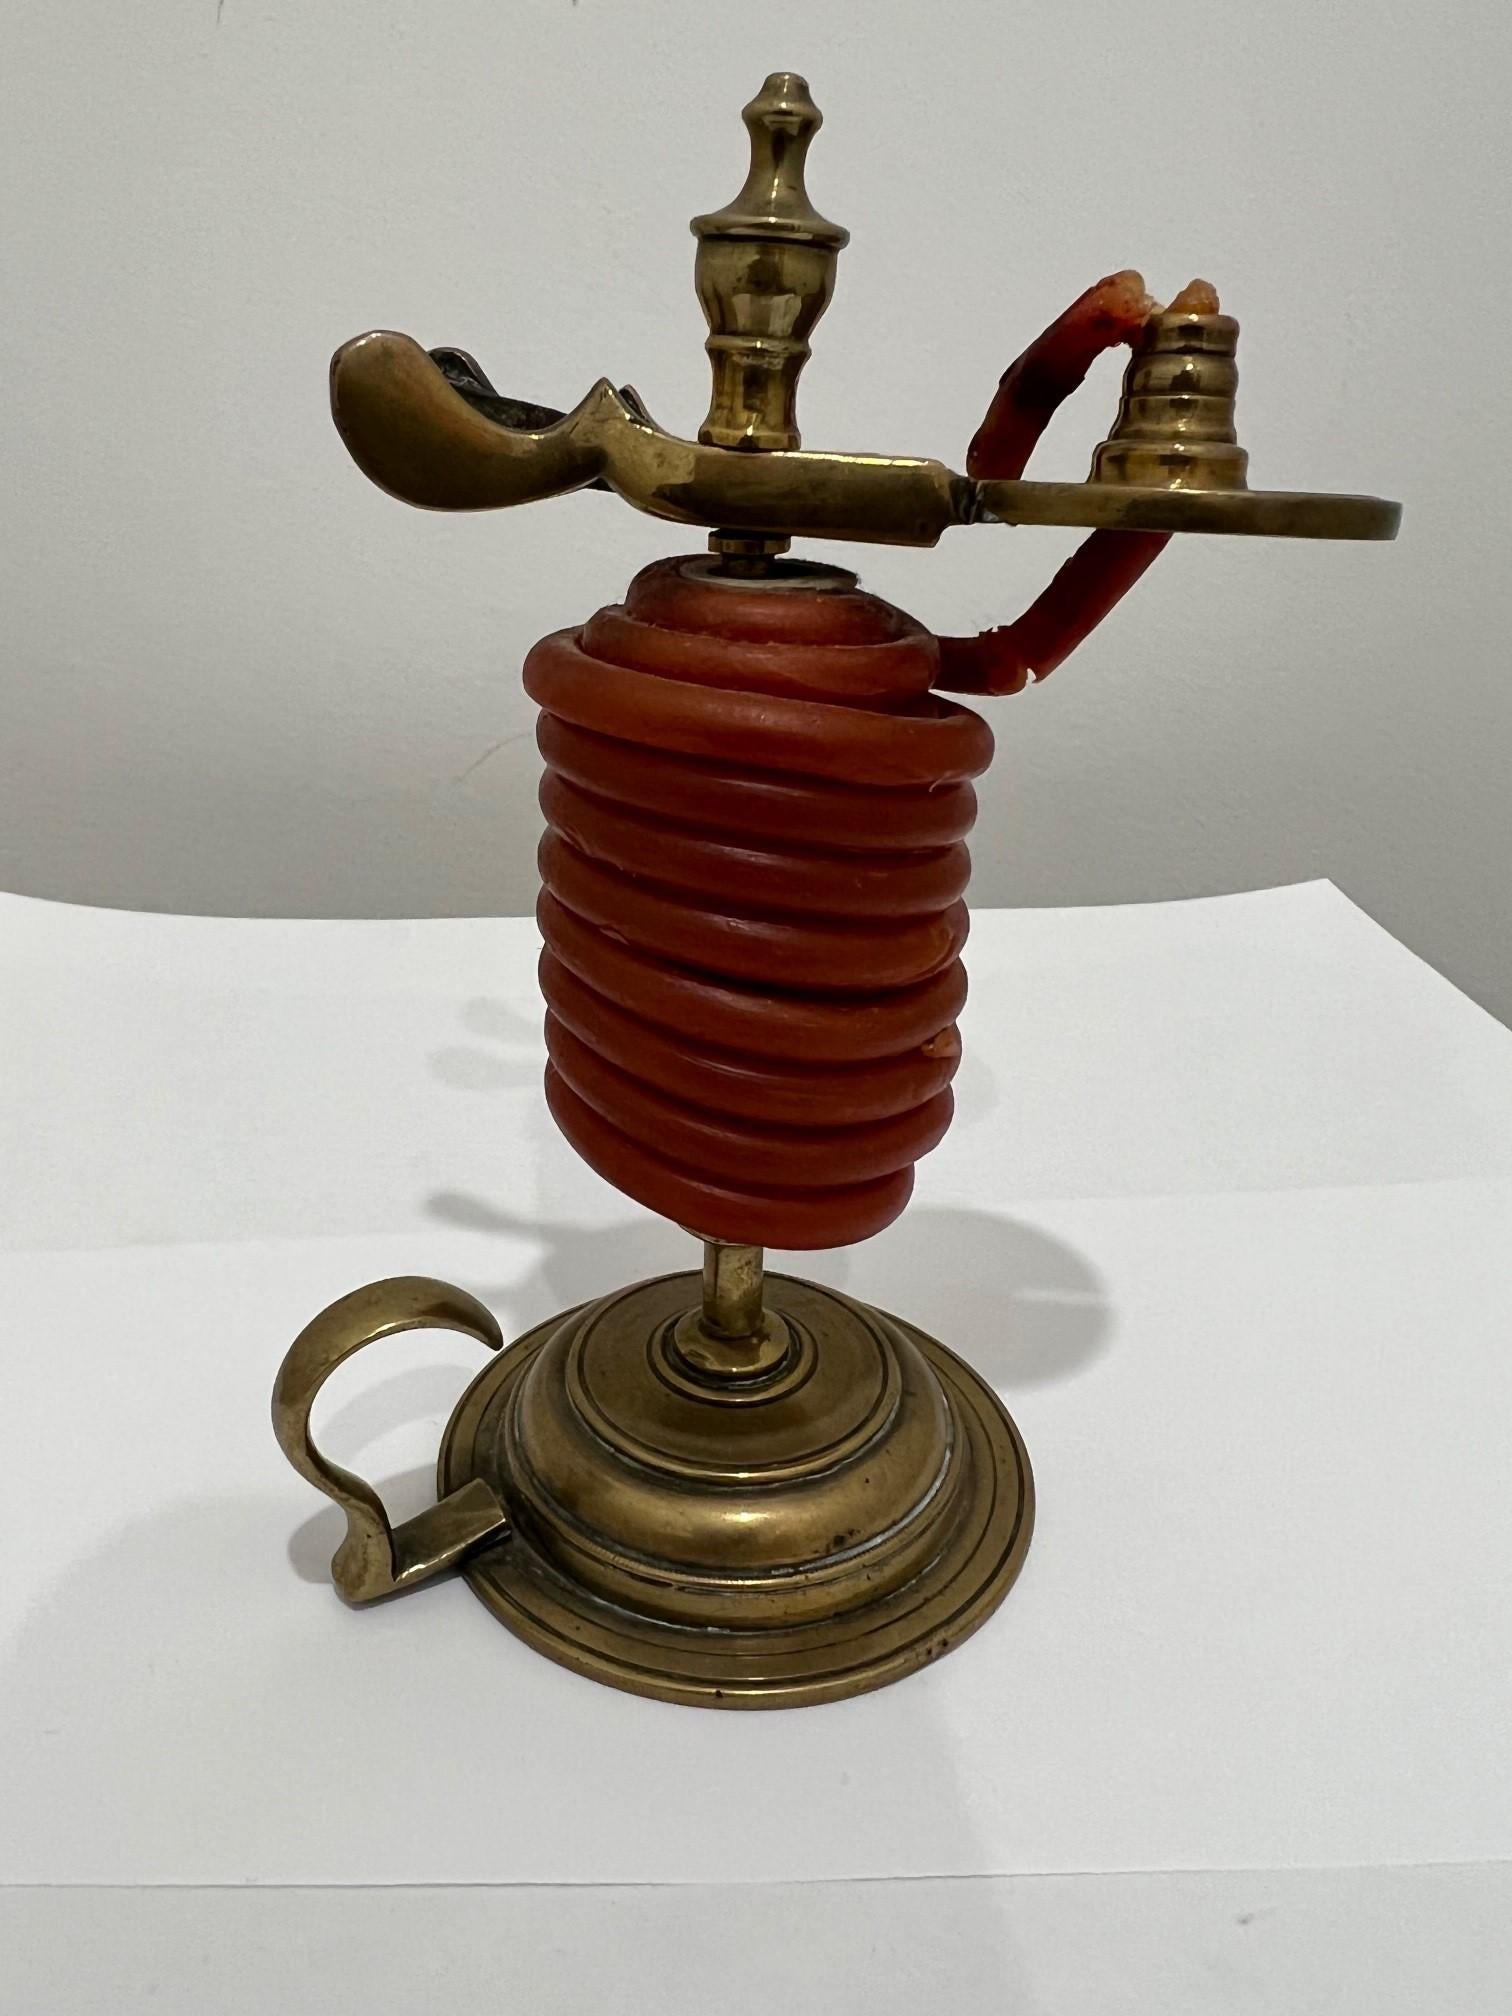 Cric de cire en laiton de la fin du 19e siècle, avec un levier de pouce et de la cire rouge sur un support avec un éteignoir. Un vérin à cire est un dispositif utilisé pour tenir un cône de cire à cacheter destiné à créer des scellements sur des